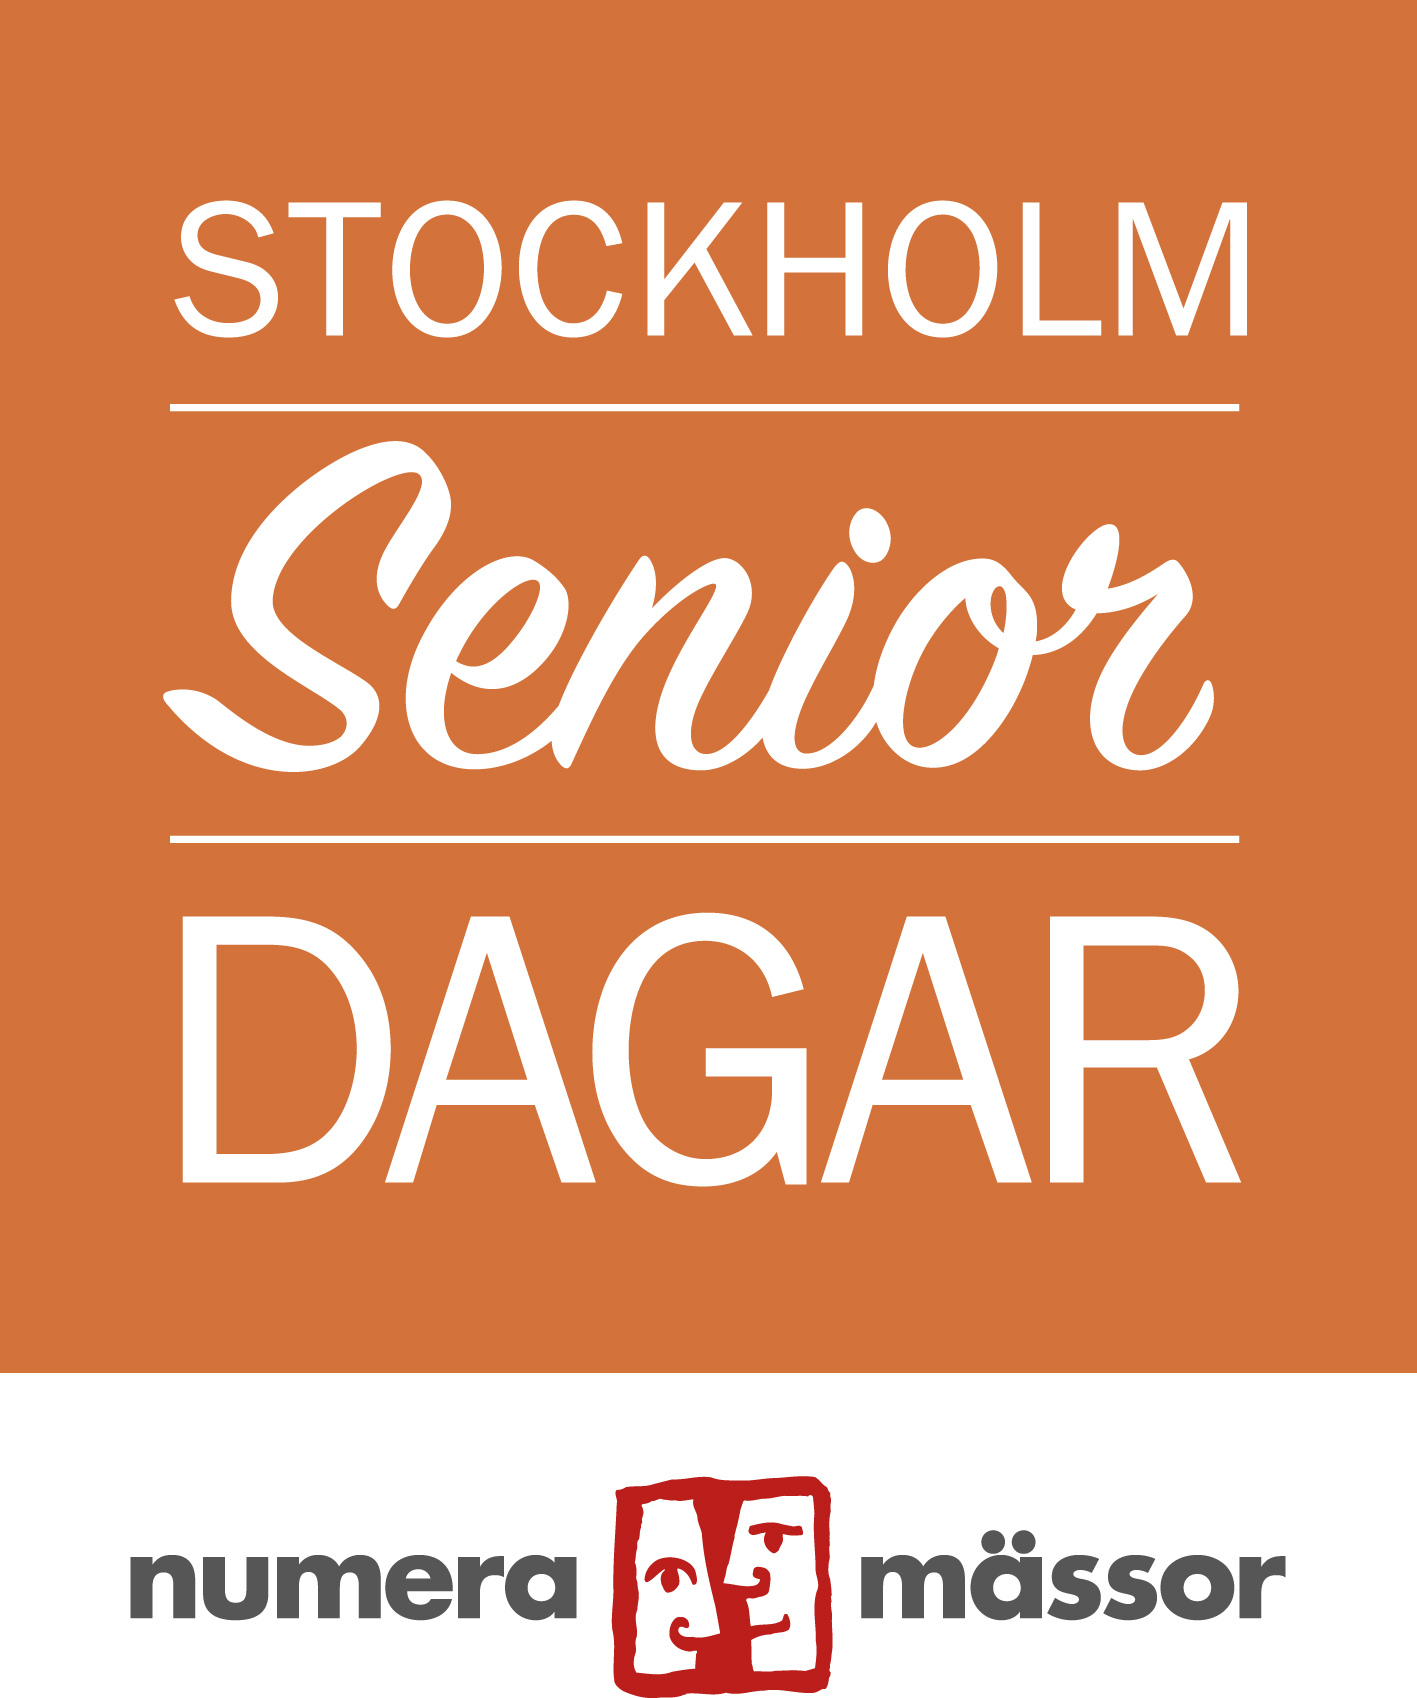 STOCKHOLM Senior DAGAR numera mässor